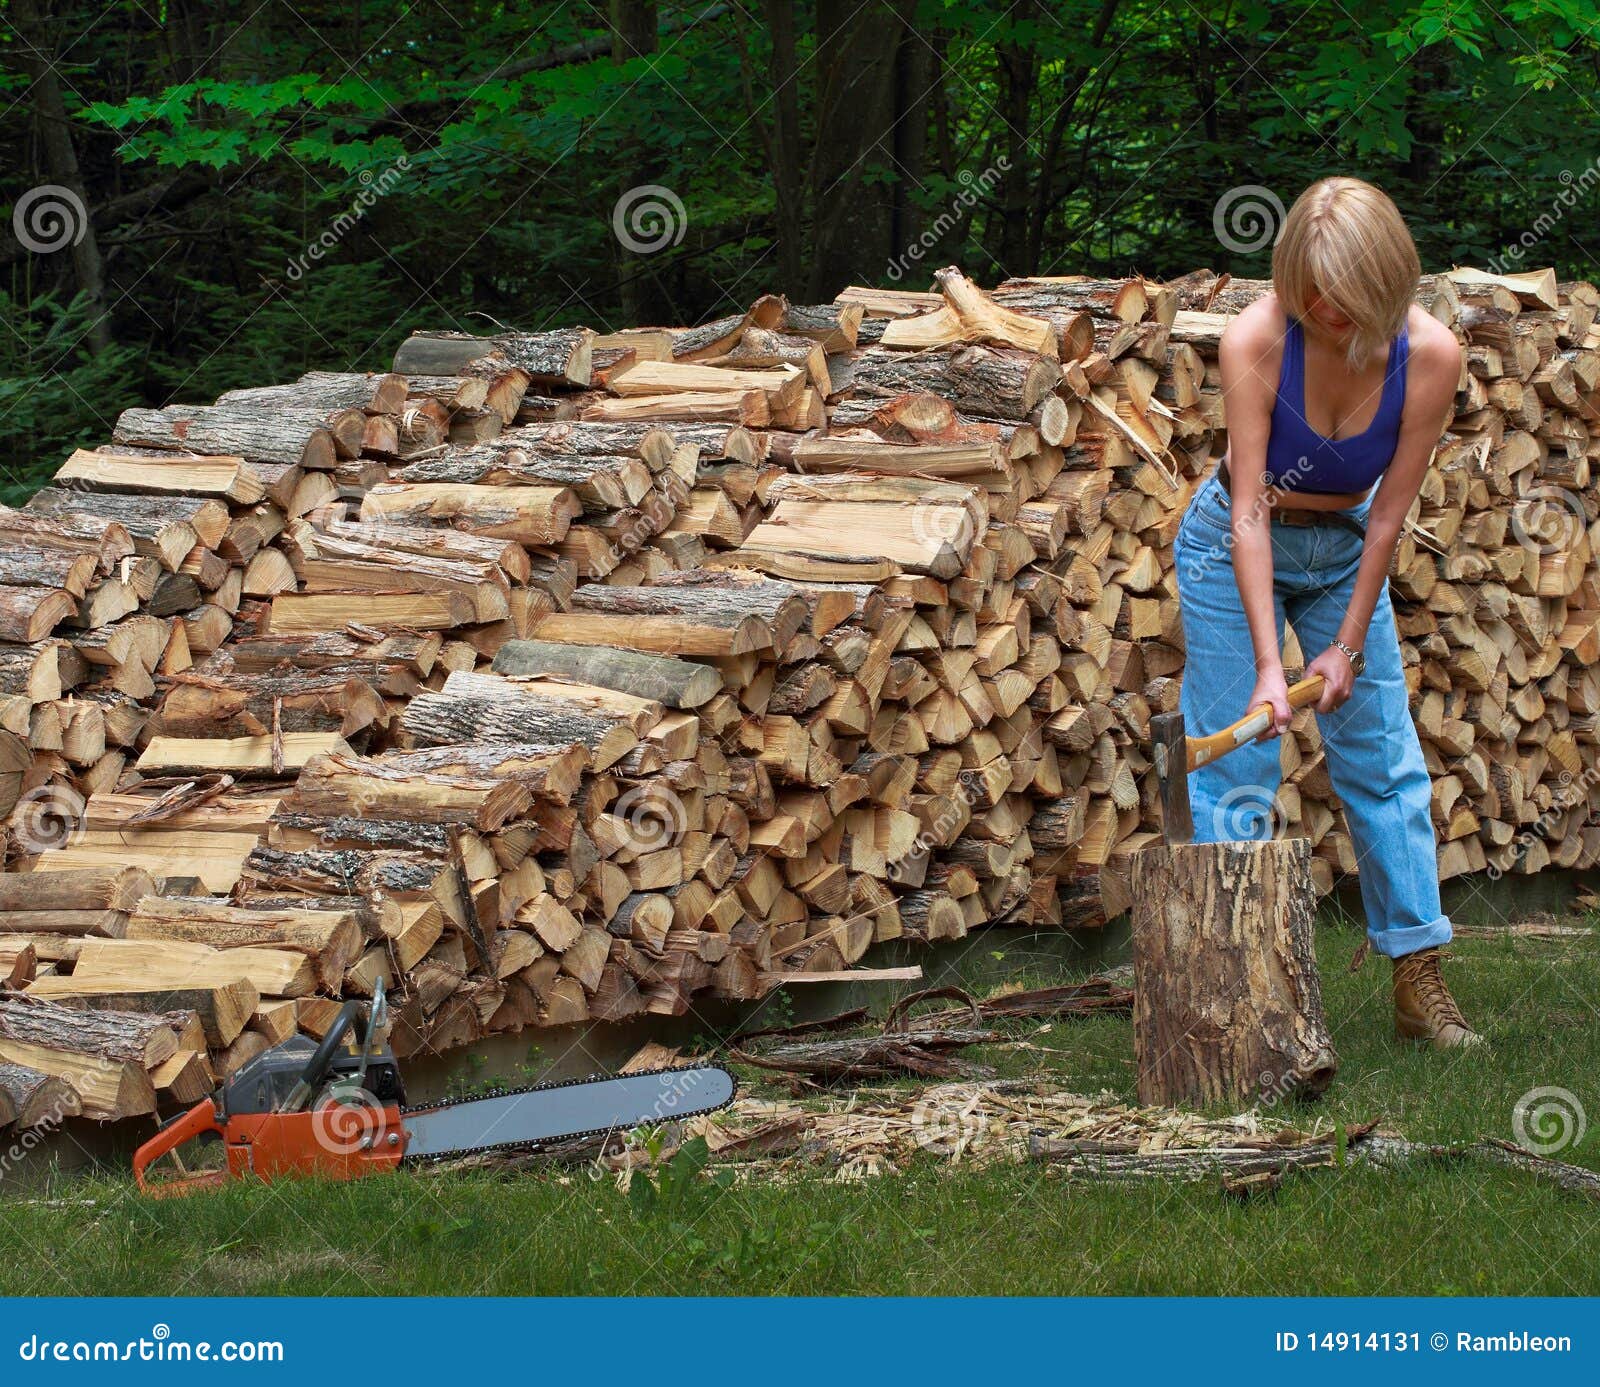 girl-splitting-firewood-14914131.jpg